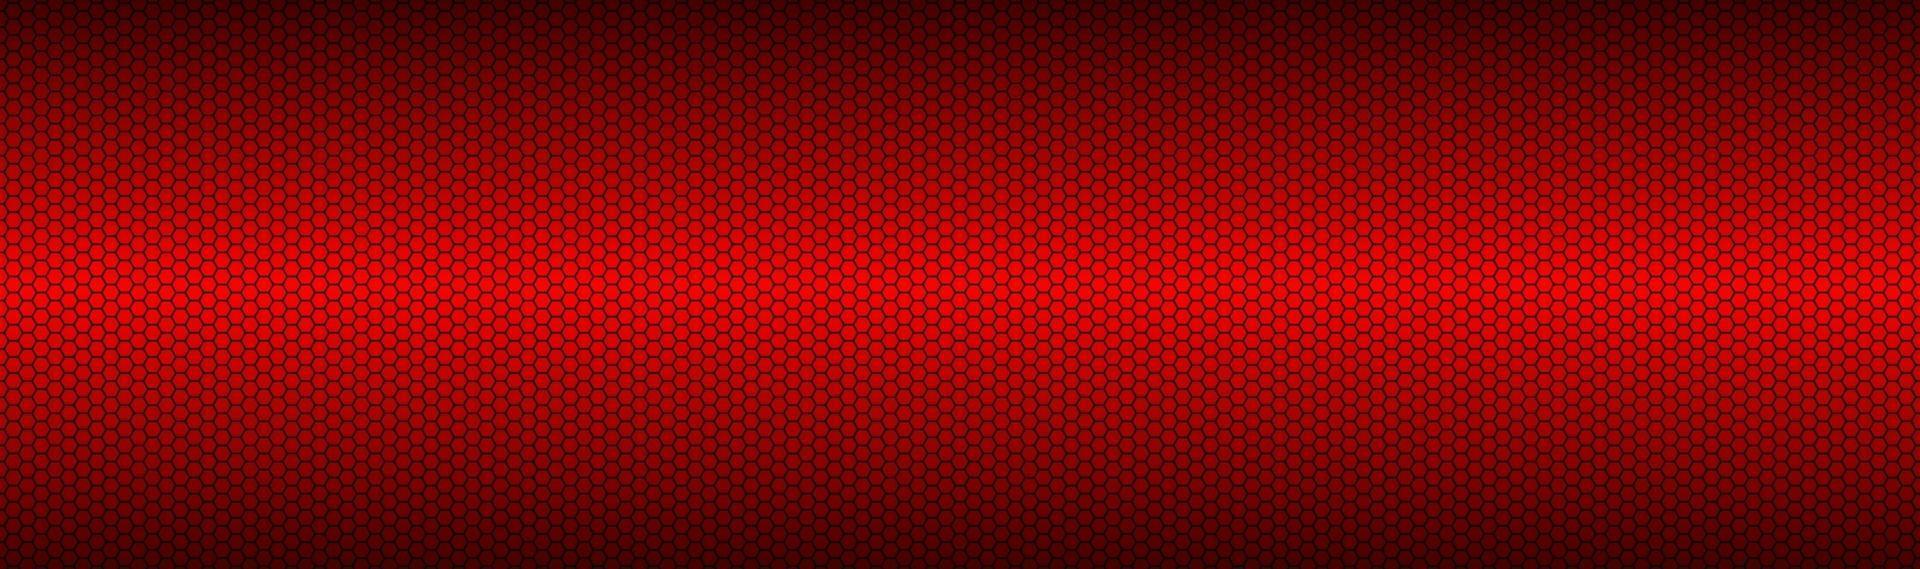 abstracto rojo oscuro geométrico malla hexagonal material encabezado perforado metálico tecnología banner vector abstracto fondo de pantalla ancha